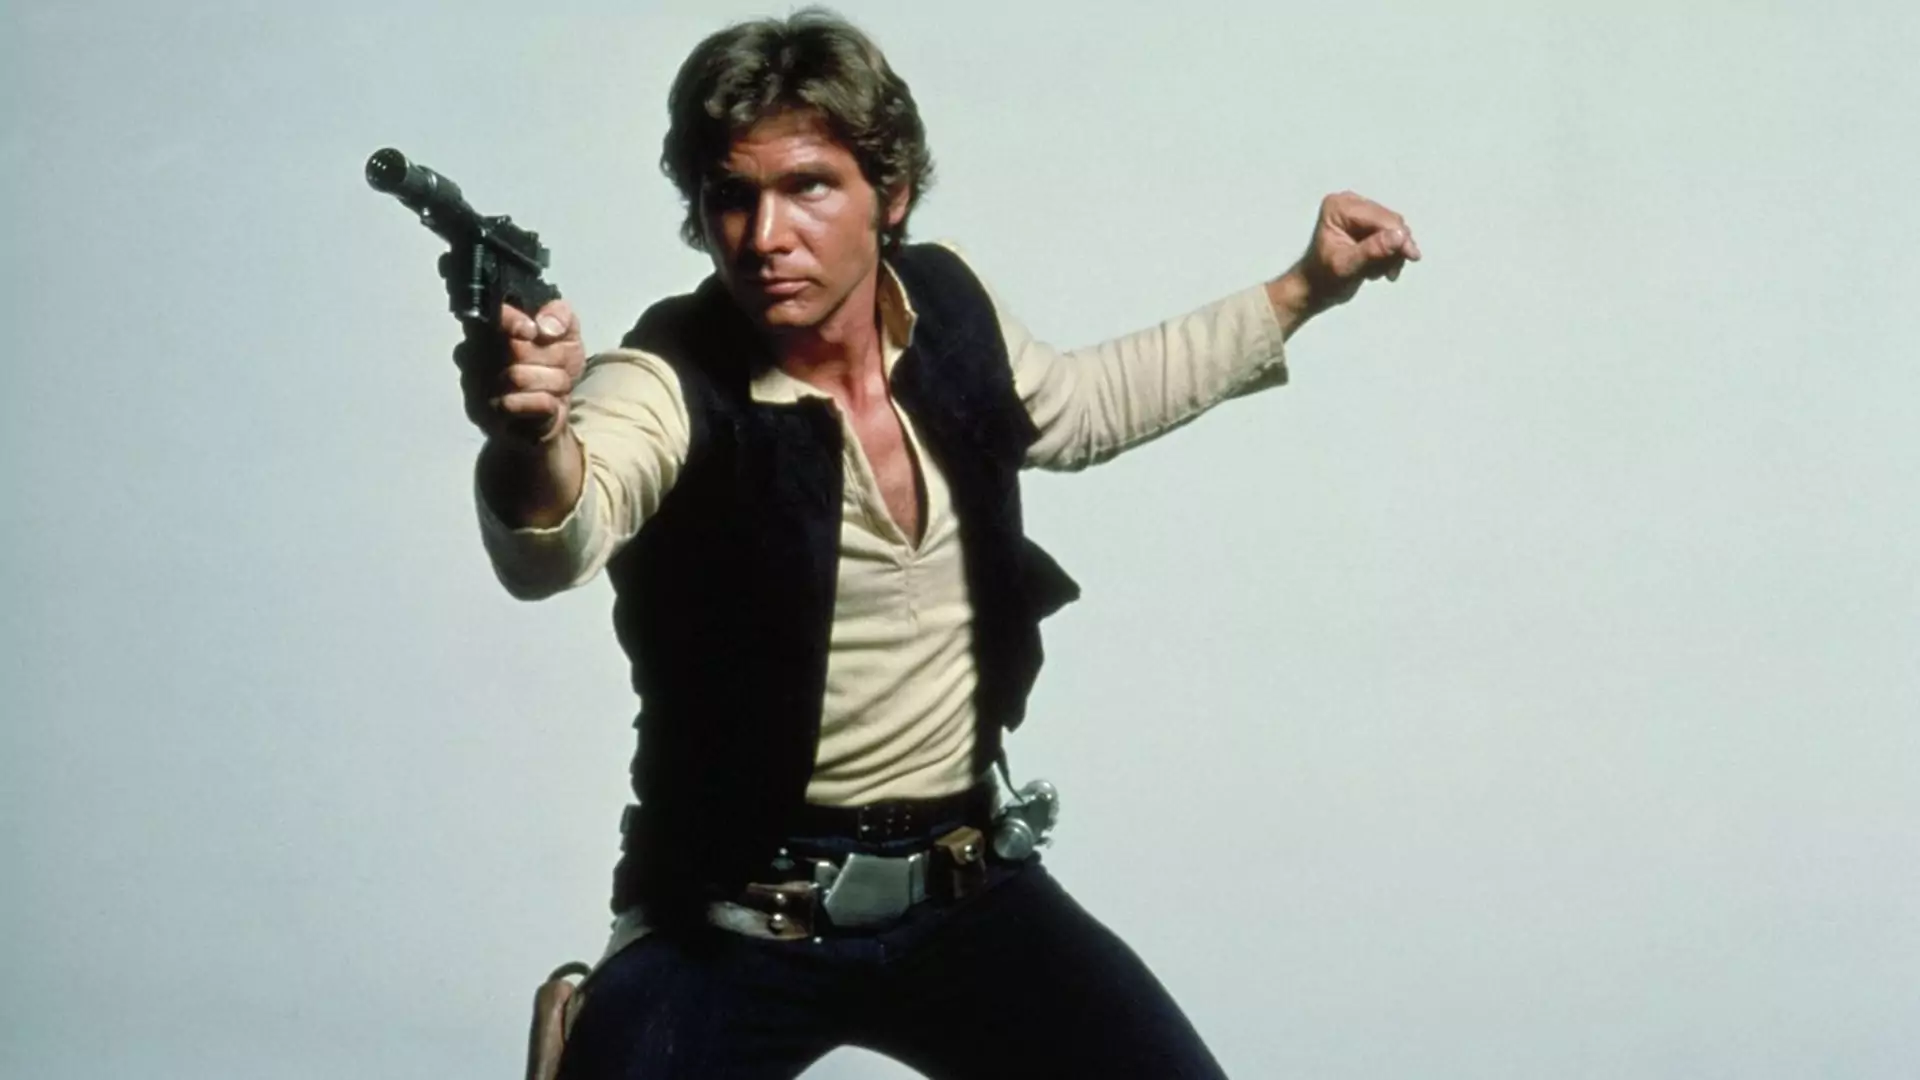 Bohaterem najnowszych "Gwiezdnych wojen" będzie Han Solo. Właśnie wyciekł tajny podtytuł filmu